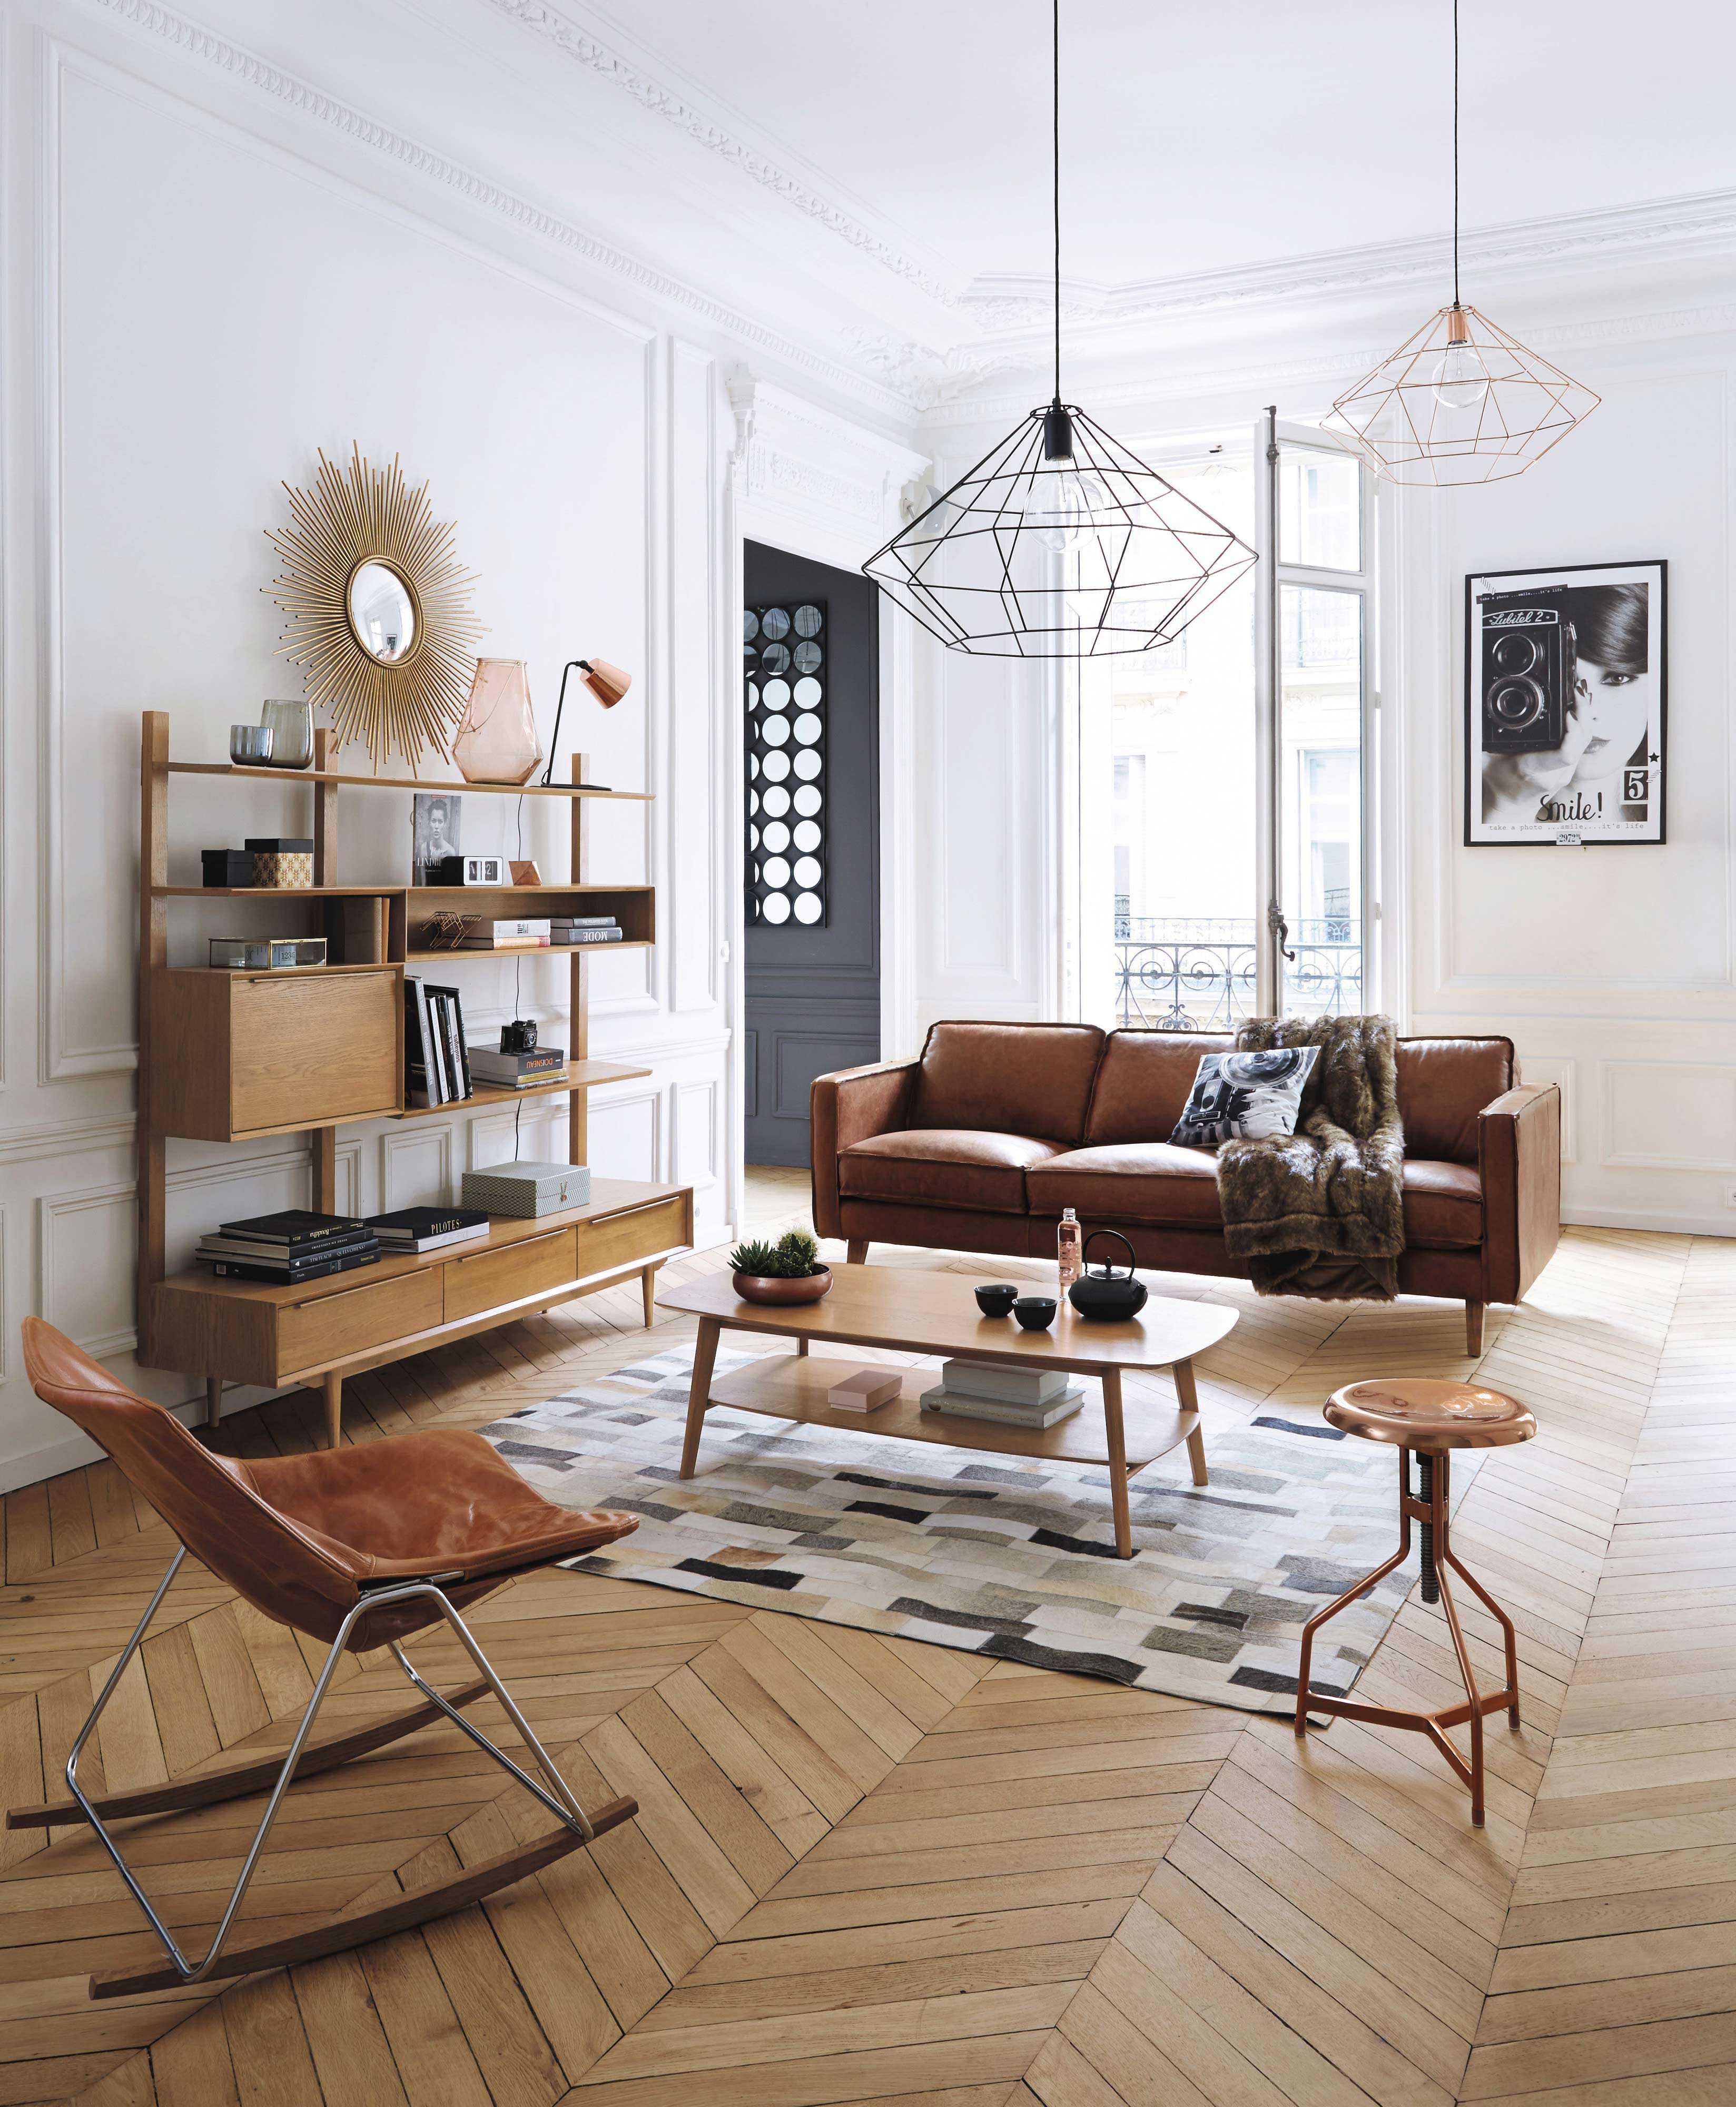 Natürliches Zimmer mit modernen Elementen aufwerten #runderspiegel #spiegelsonne #zimmergestaltung ©Maisons du Monde